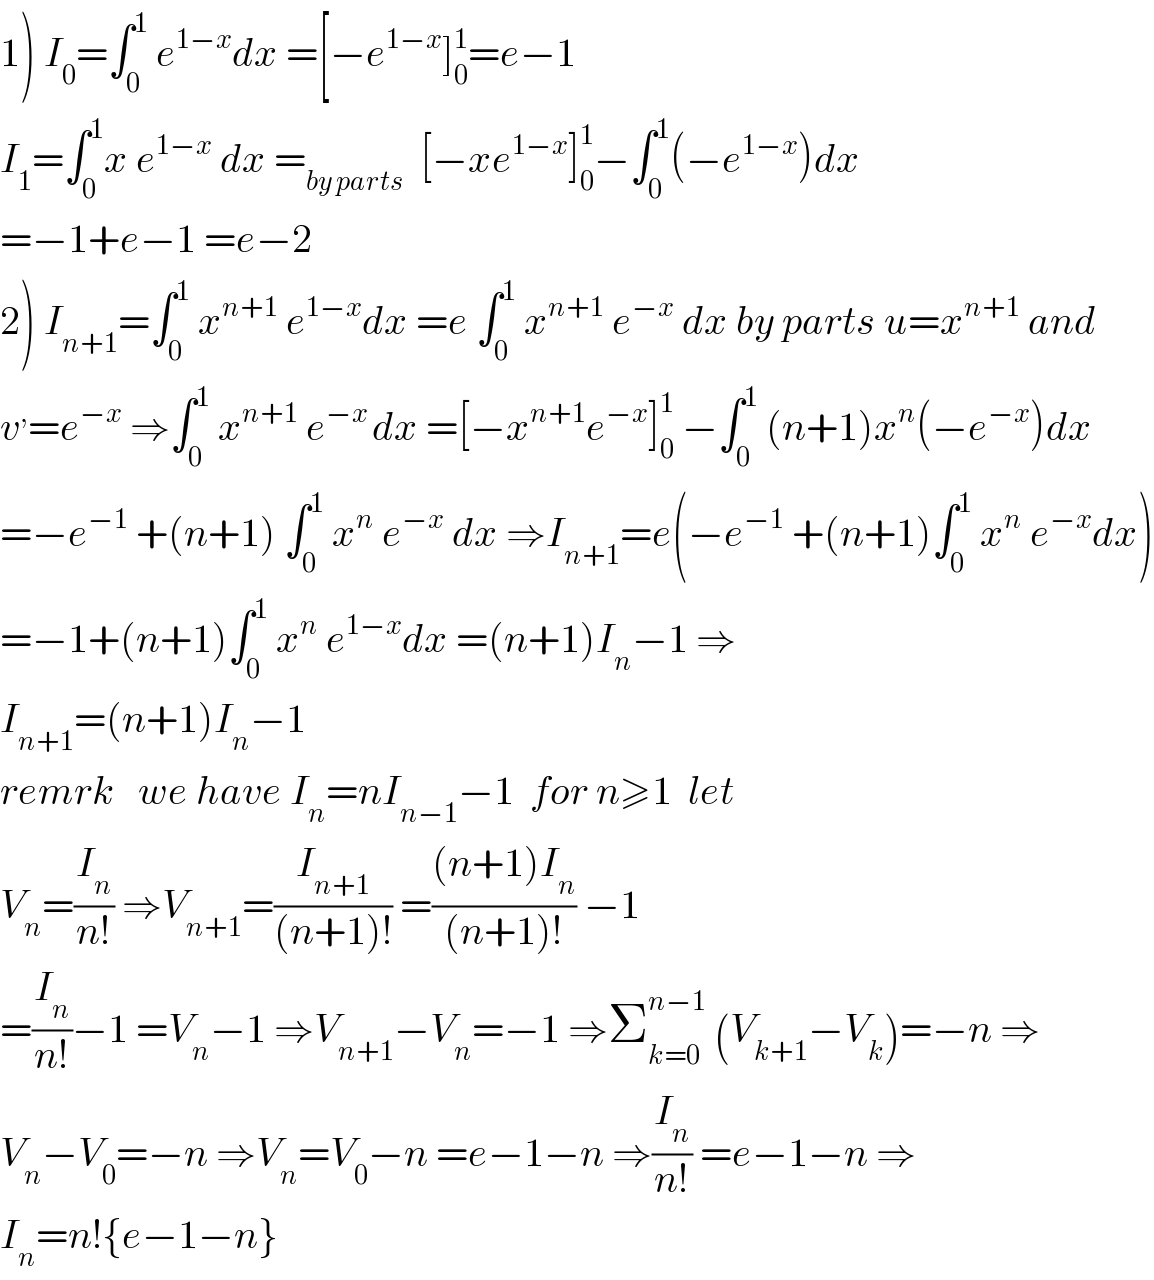 1) I_0 =∫_0 ^1  e^(1−x) dx =[−e^(1−x) ]_0 ^1 =e−1  I_1 =∫_0 ^1 x e^(1−x)  dx =_(by parts)   [−xe^(1−x) ]_0 ^1 −∫_0 ^1 (−e^(1−x) )dx  =−1+e−1 =e−2  2) I_(n+1) =∫_0 ^1  x^(n+1)  e^(1−x) dx =e ∫_0 ^1  x^(n+1)  e^(−x)  dx by parts u=x^(n+1)  and  v^, =e^(−x)  ⇒∫_0 ^1  x^(n+1)  e^(−x ) dx =[−x^(n+1) e^(−x) ]_0 ^1  −∫_0 ^1  (n+1)x^n (−e^(−x) )dx  =−e^(−1)  +(n+1) ∫_0 ^1  x^n  e^(−x)  dx ⇒I_(n+1) =e(−e^(−1)  +(n+1)∫_0 ^1  x^n  e^(−x) dx)  =−1+(n+1)∫_0 ^1  x^n  e^(1−x) dx =(n+1)I_n −1 ⇒  I_(n+1) =(n+1)I_n −1     remrk   we have I_n =nI_(n−1) −1  for n≥1  let  V_n =(I_n /(n!)) ⇒V_(n+1) =(I_(n+1) /((n+1)!)) =(((n+1)I_n )/((n+1)!)) −1  =(I_n /(n!))−1 =V_n −1 ⇒V_(n+1) −V_n =−1 ⇒Σ_(k=0) ^(n−1)  (V_(k+1) −V_k )=−n ⇒  V_n −V_0 =−n ⇒V_n =V_0 −n =e−1−n ⇒(I_n /(n!)) =e−1−n ⇒  I_n =n!{e−1−n}  